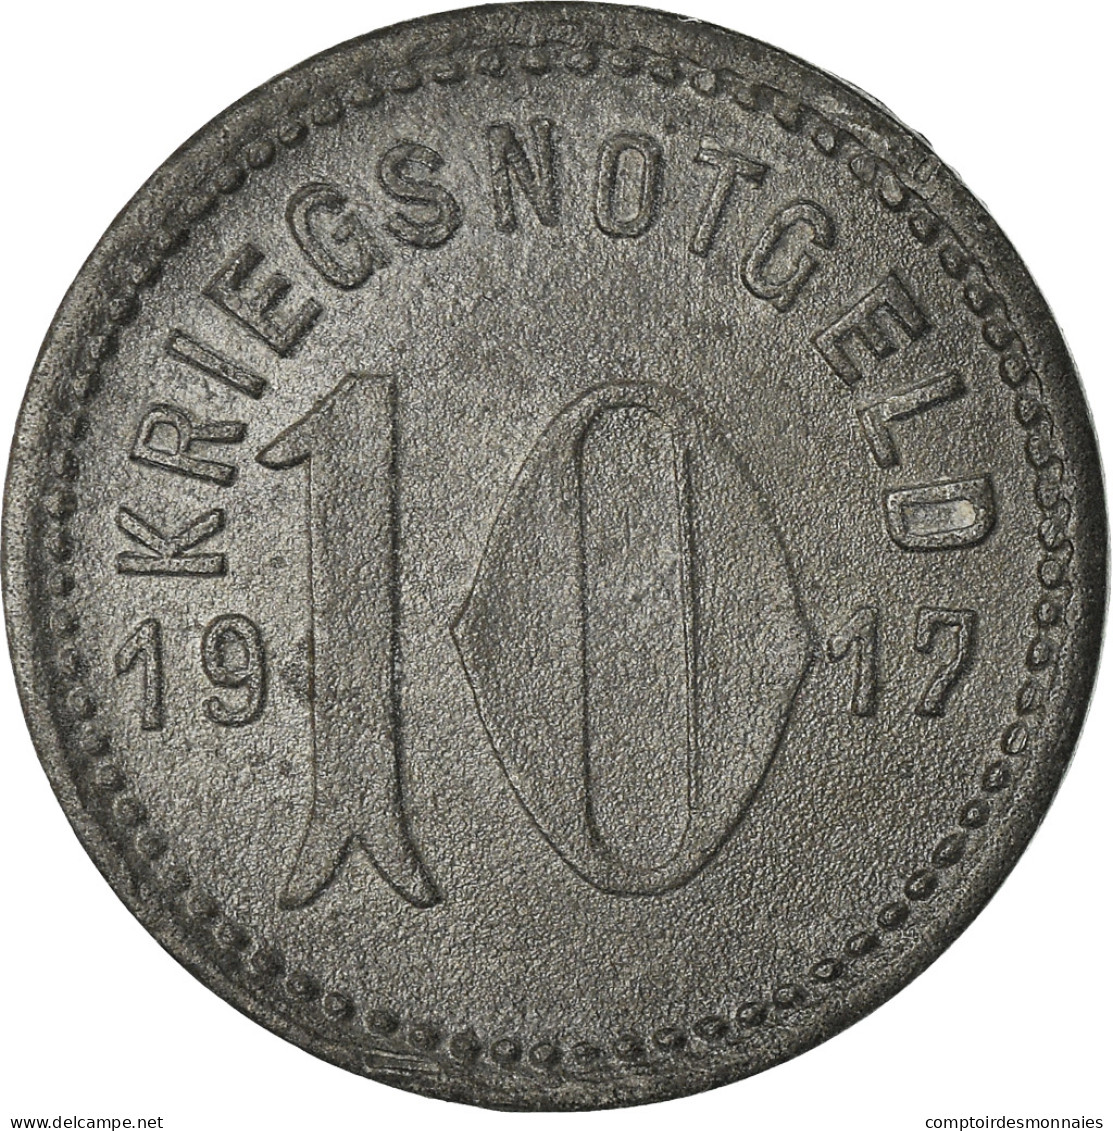 Monnaie, Allemagne, Kriegsnotgeld, Speyer, 10 Pfennig, 1917, TTB+, Zinc - Notgeld